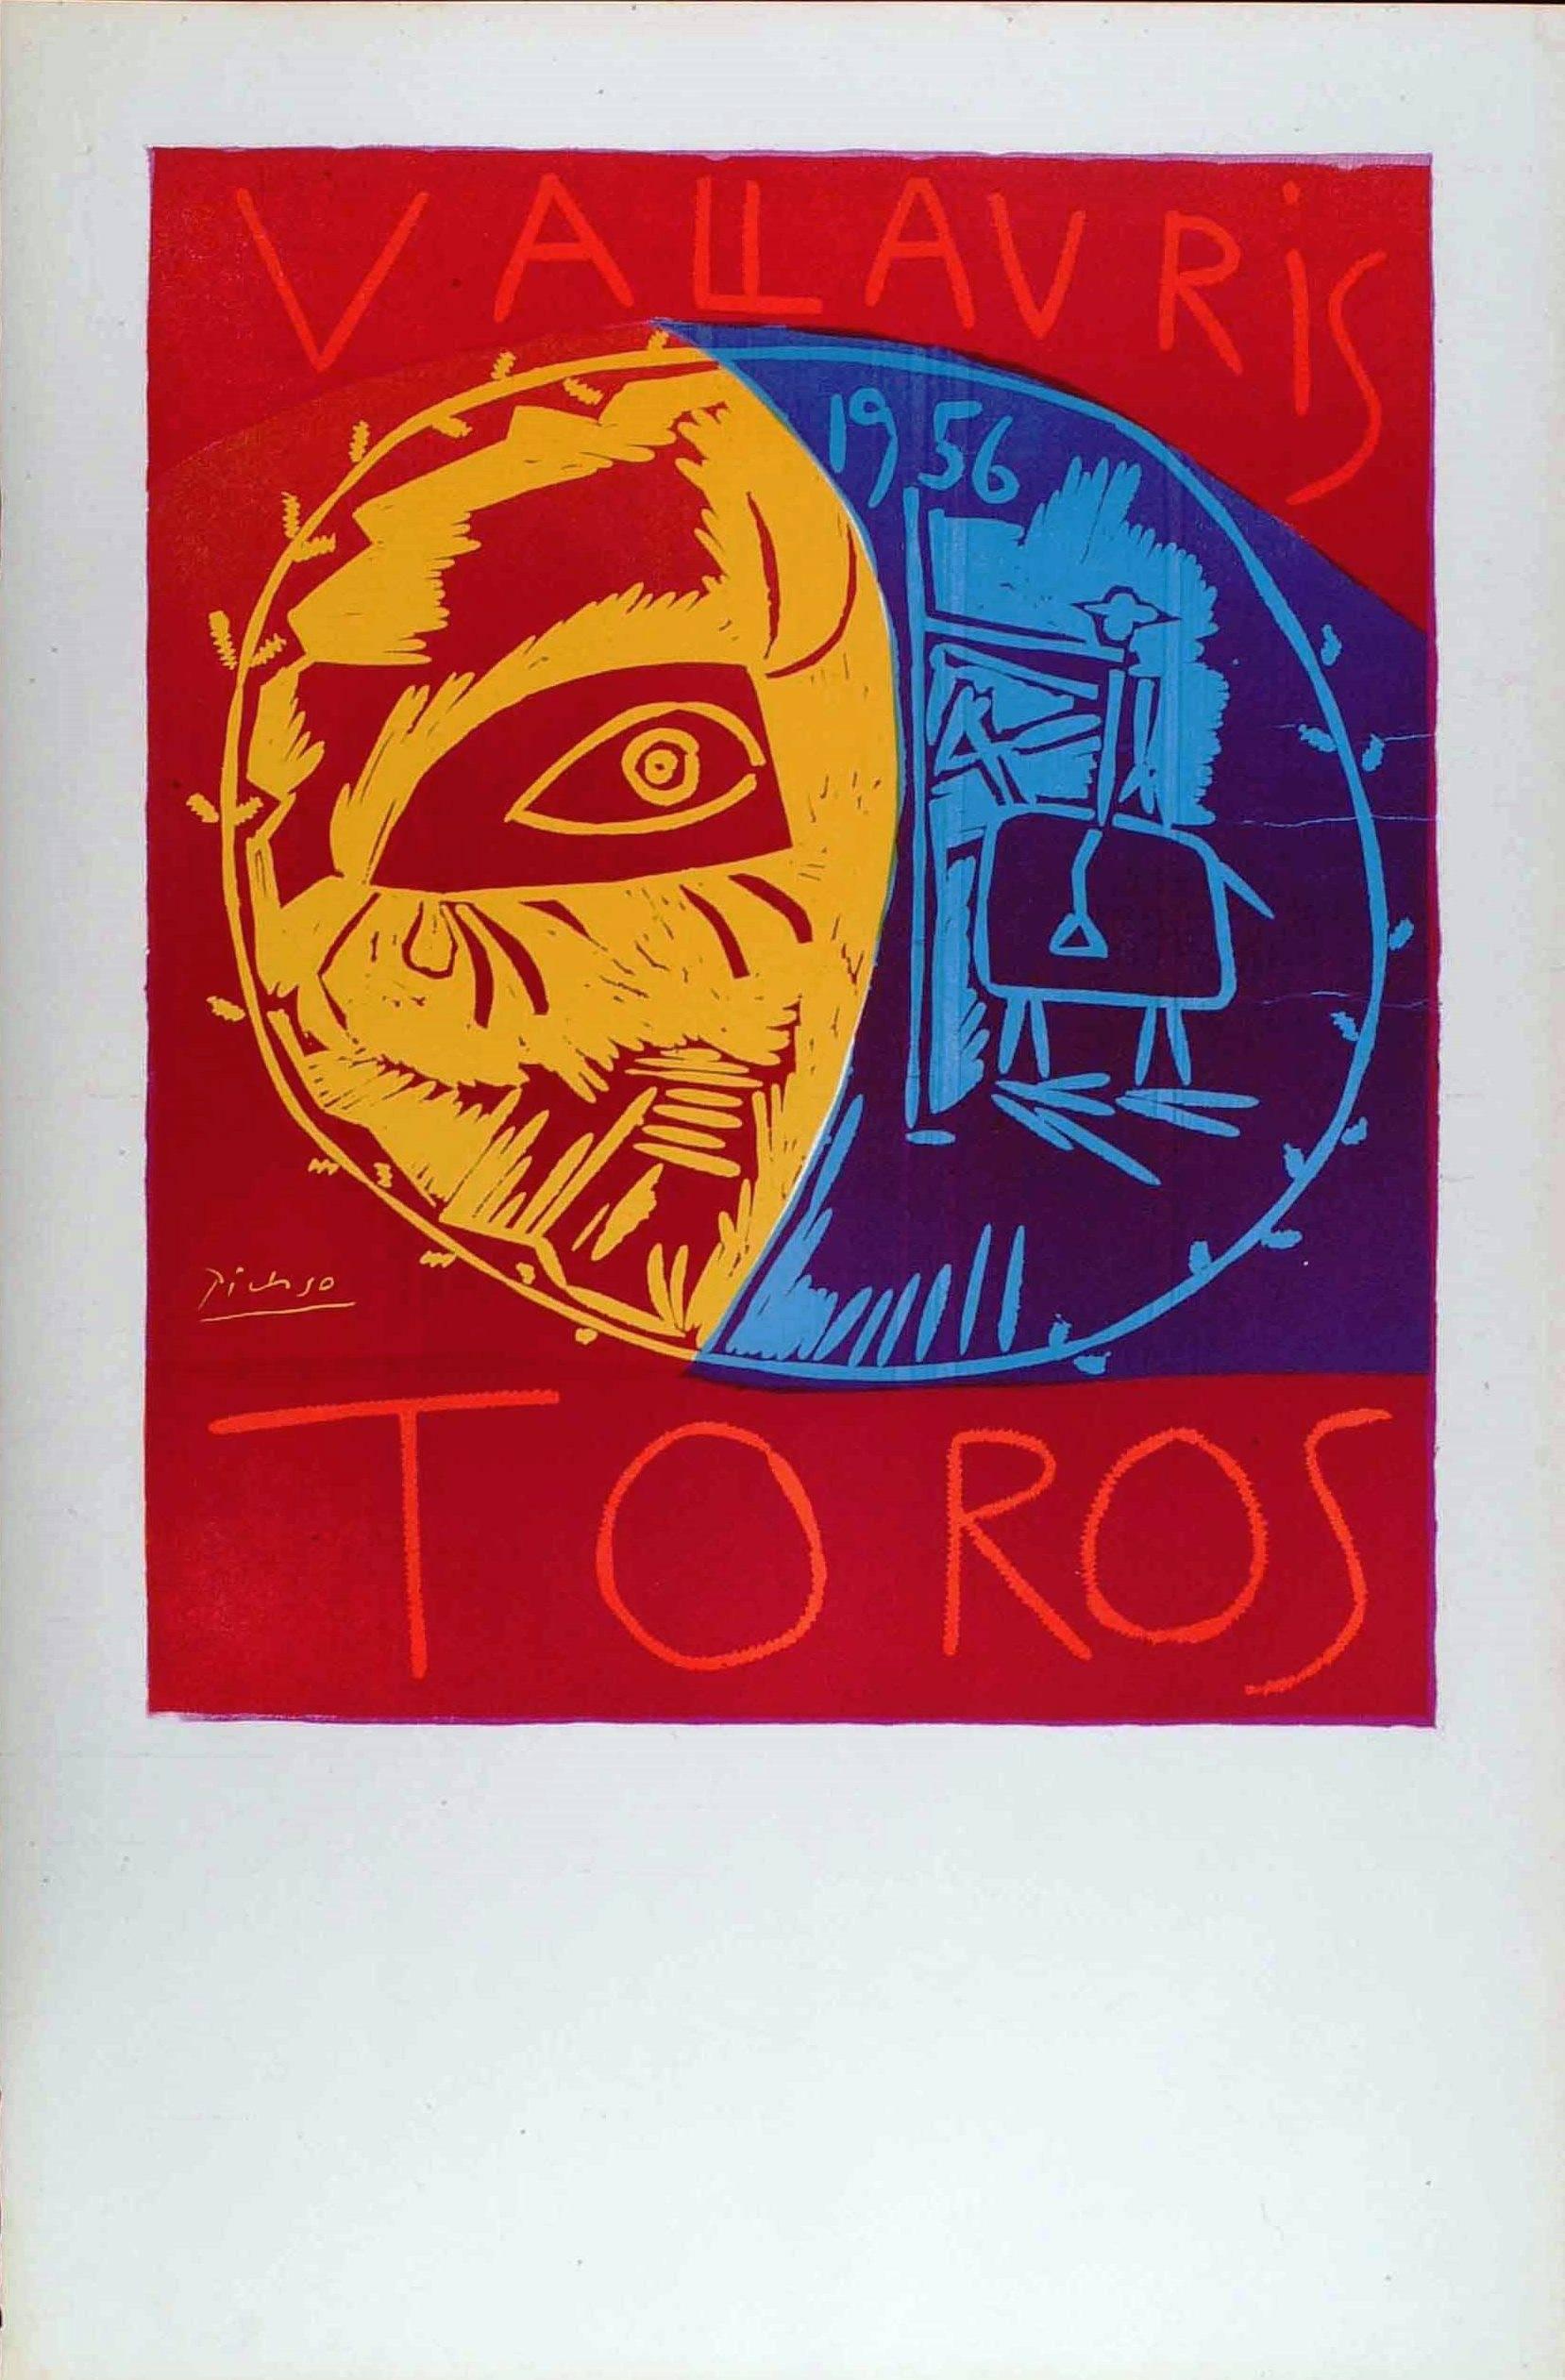 Pablo Picasso Figurative Print - Vallauris 1956 Toros